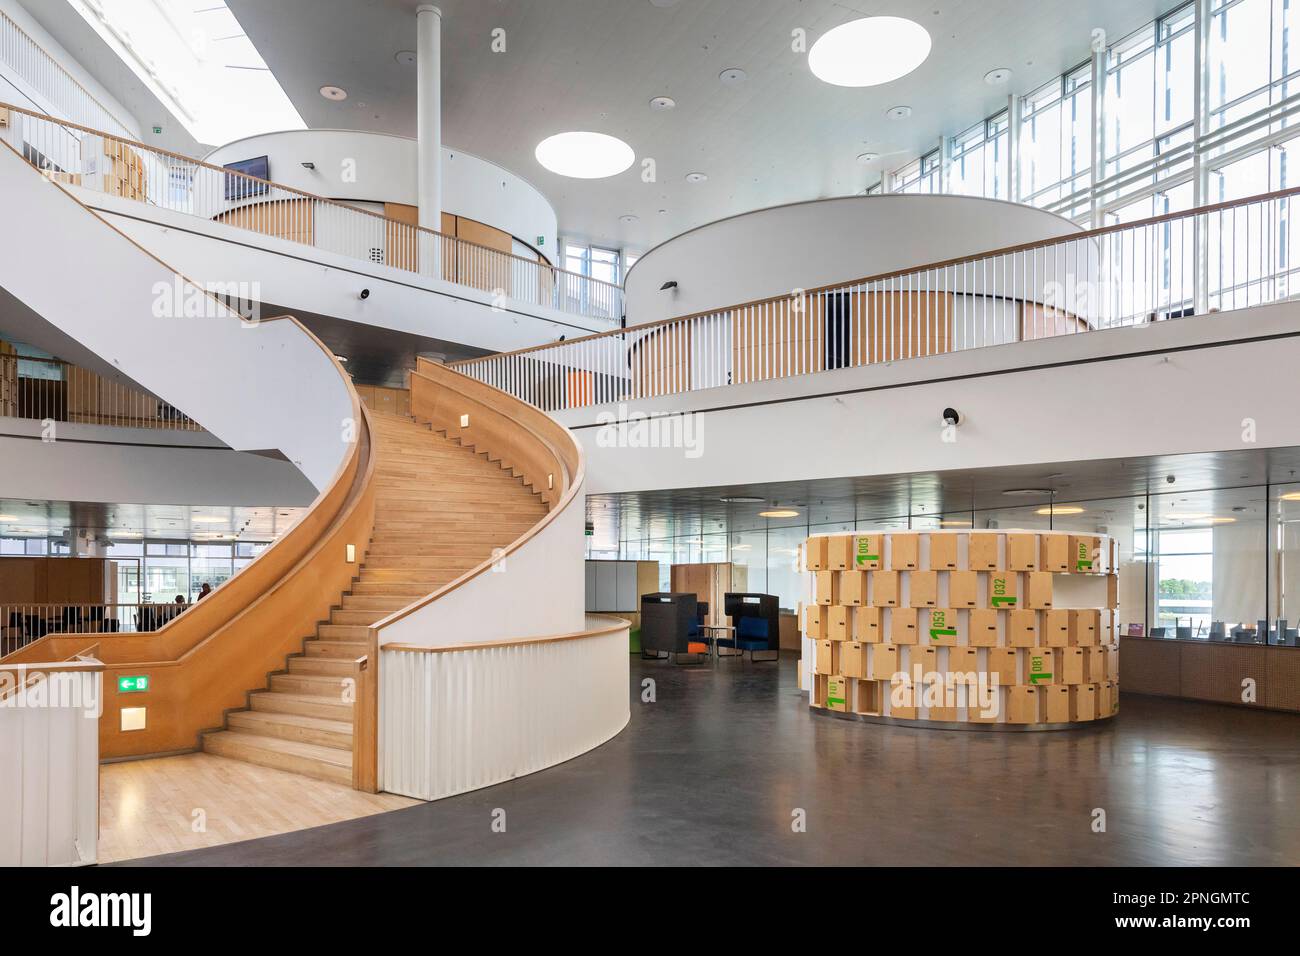 Moderne, flexible Architektur und konsequenter Einsatz von digitalen Medien machen das Orestad Gymnasium in Kopenhagen zum weltweiten Vorbild für Schu Stockfoto